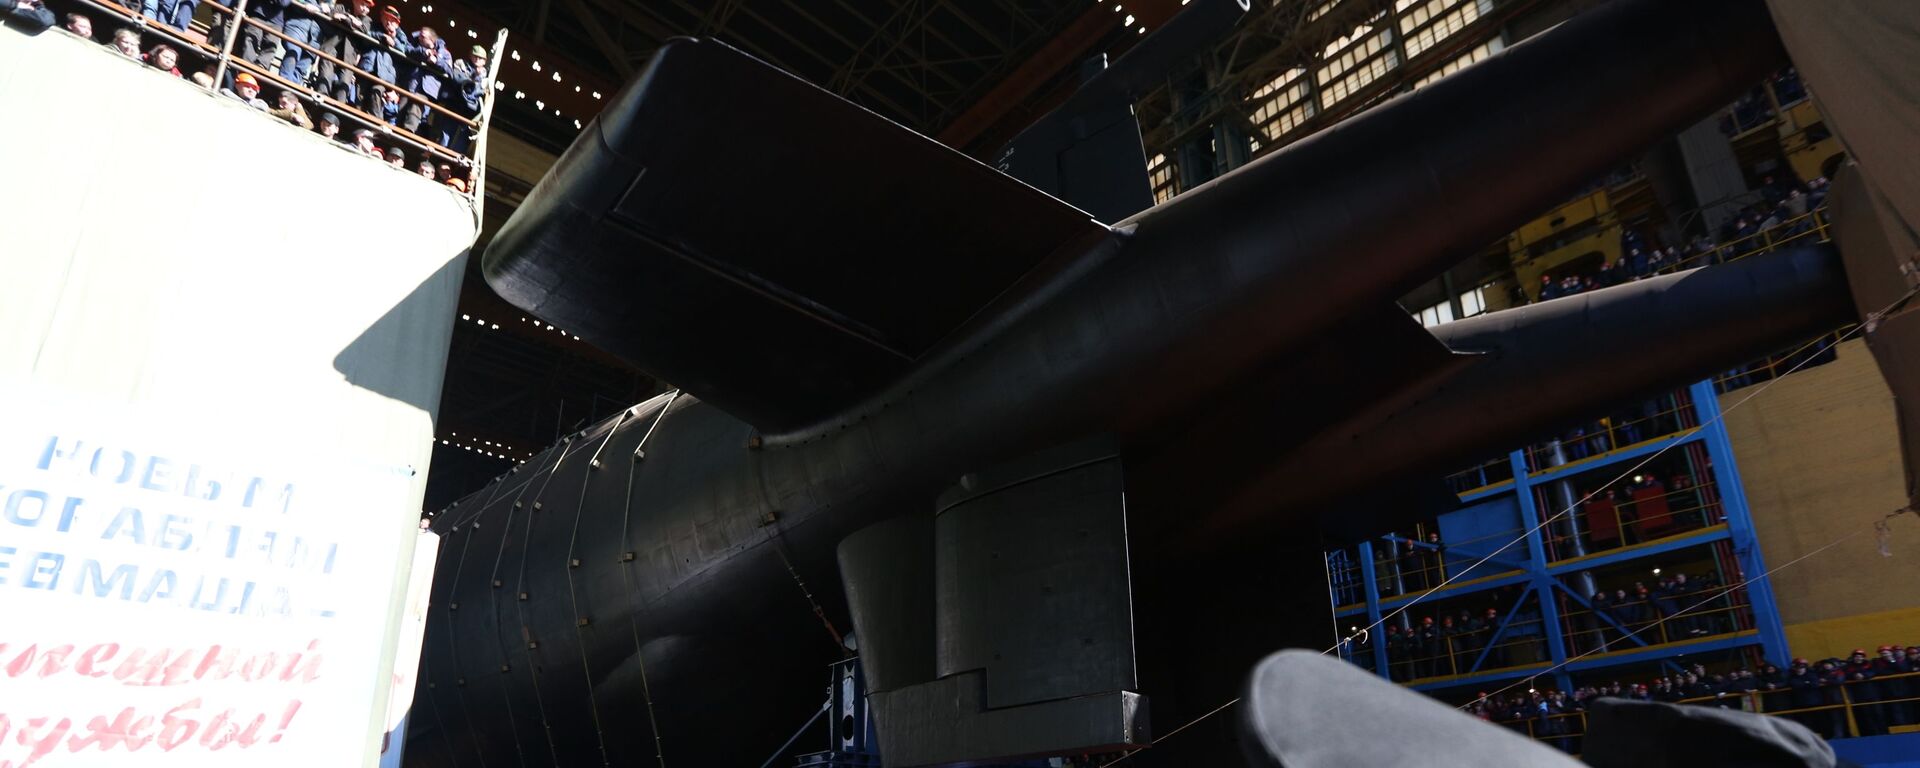 Hạ thủy tàu ngầm hạt nhân Belgorod ở vùng Arkhangelsk - Sputnik Việt Nam, 1920, 28.06.2021